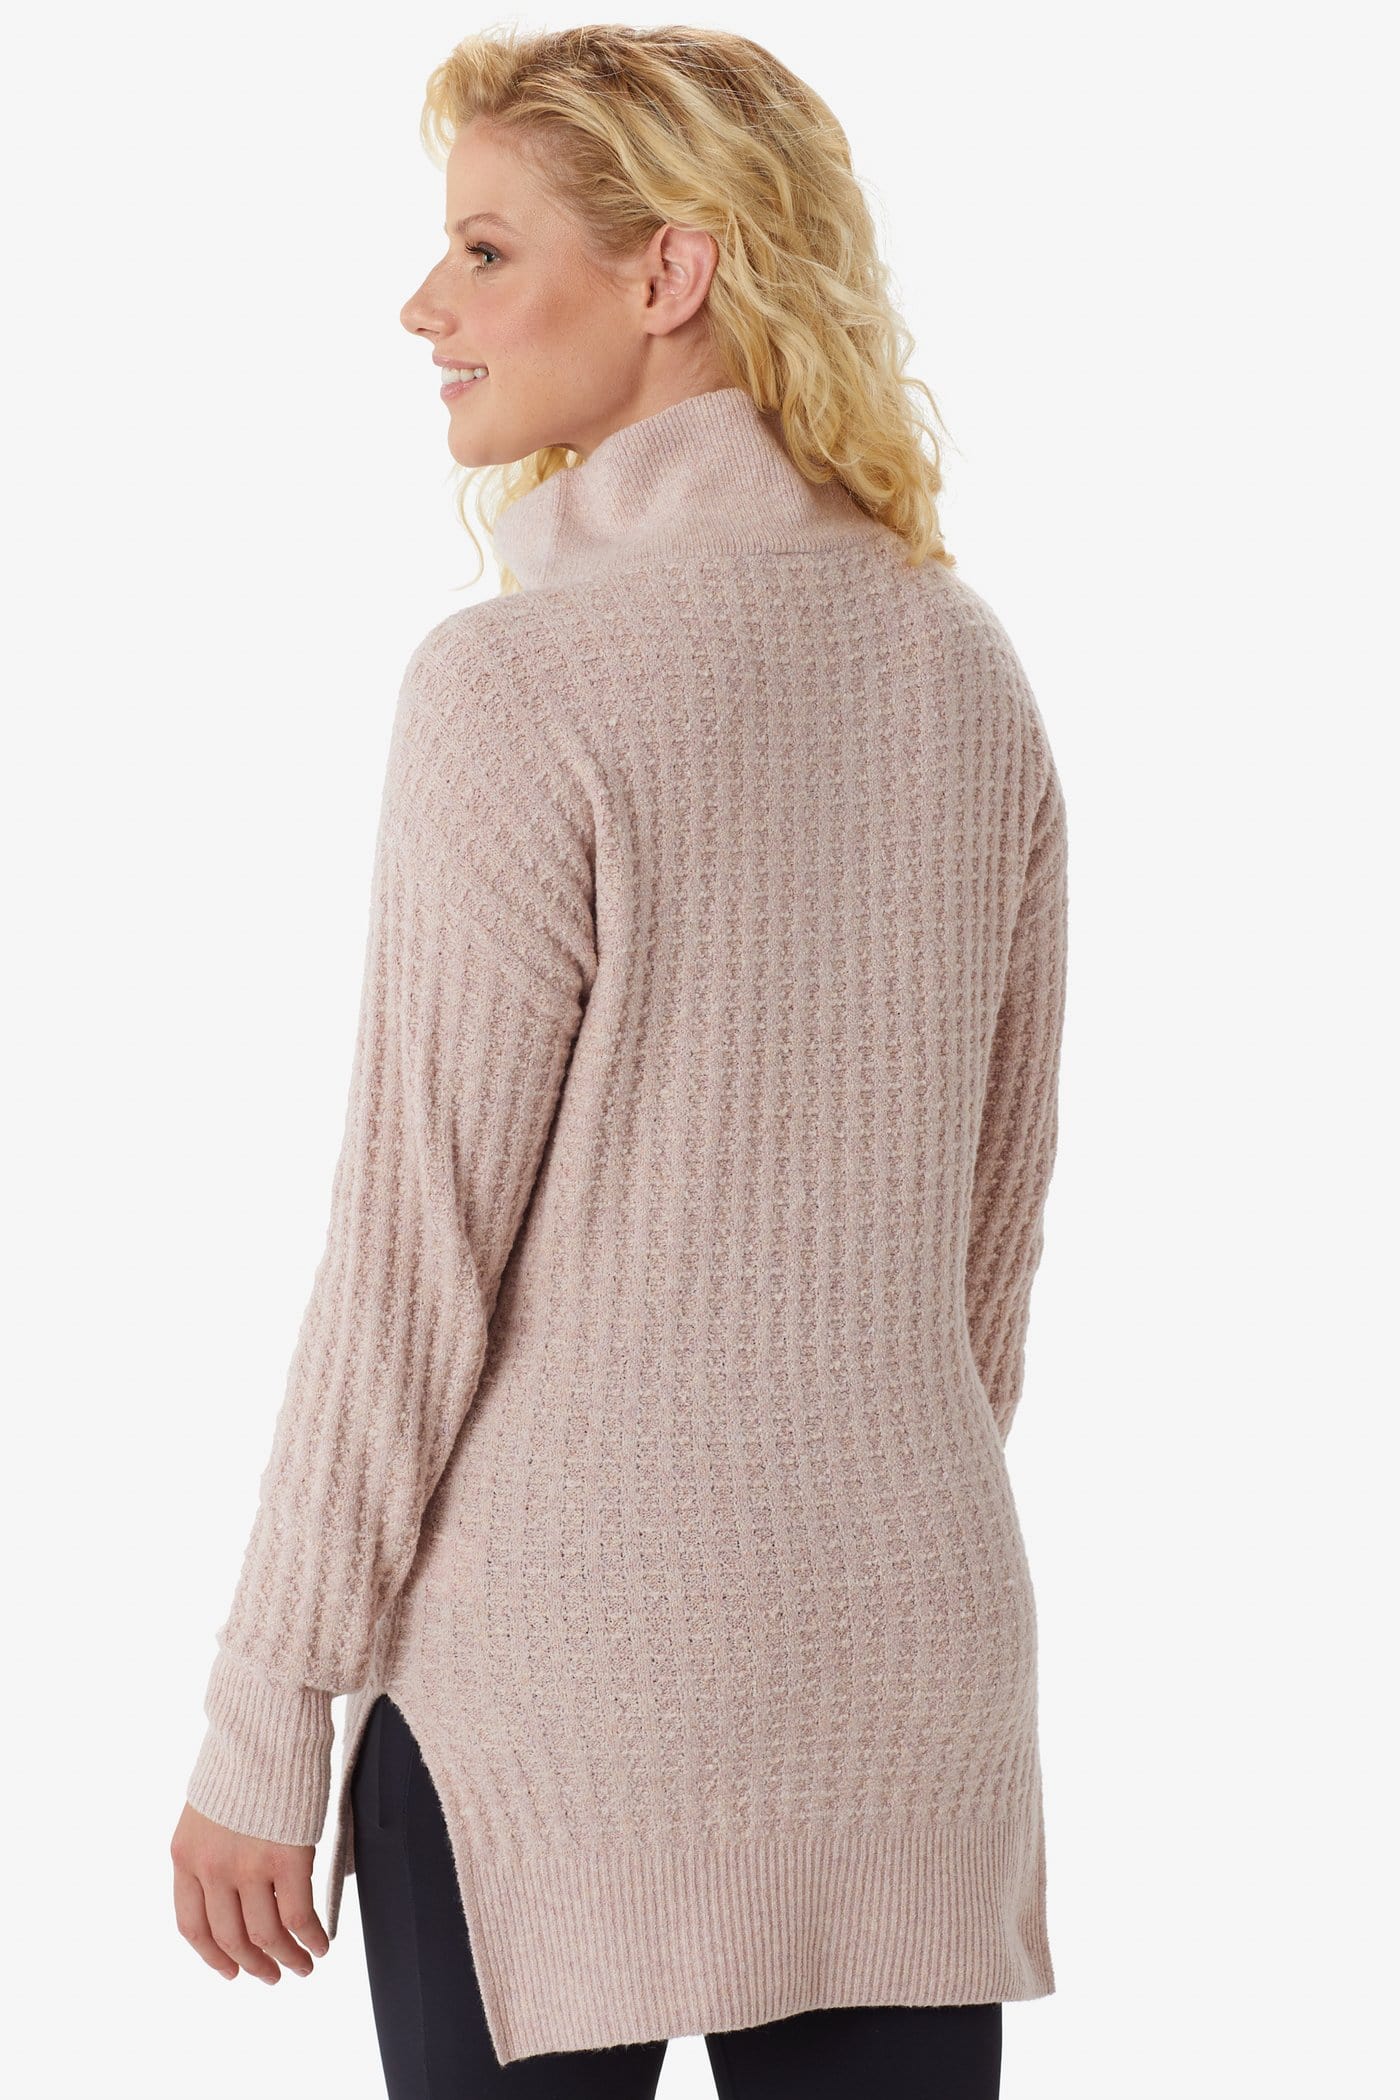 Lole Women's Evelyn Sweater